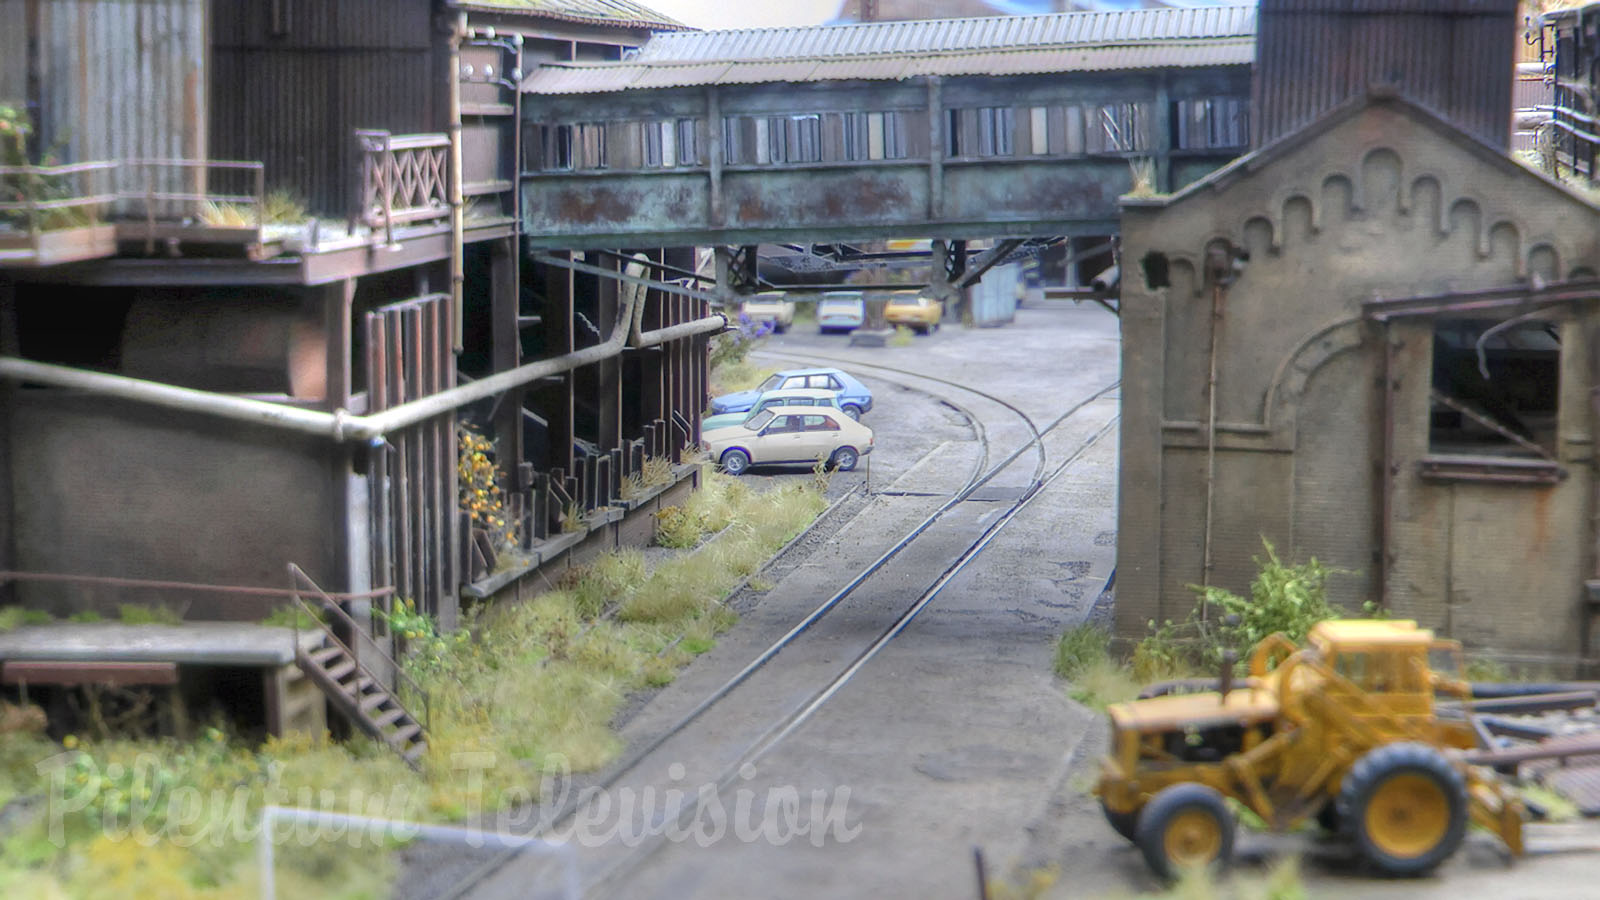 HO scale model railroad layout of Liège steel industry - Industrial model railway in museum quality